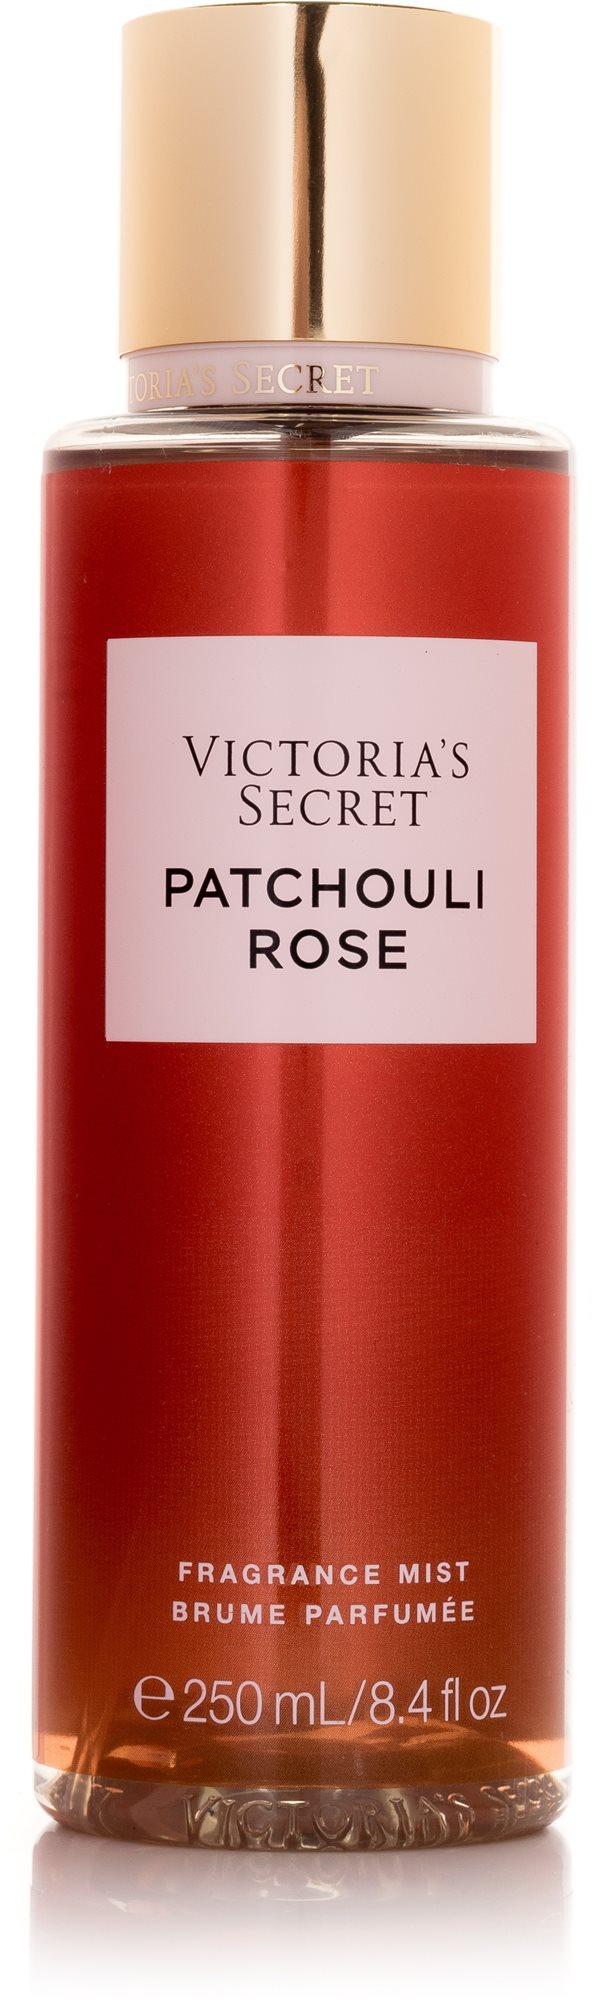 VICTORIA'S SECRET Patchouli Rose 250 ml